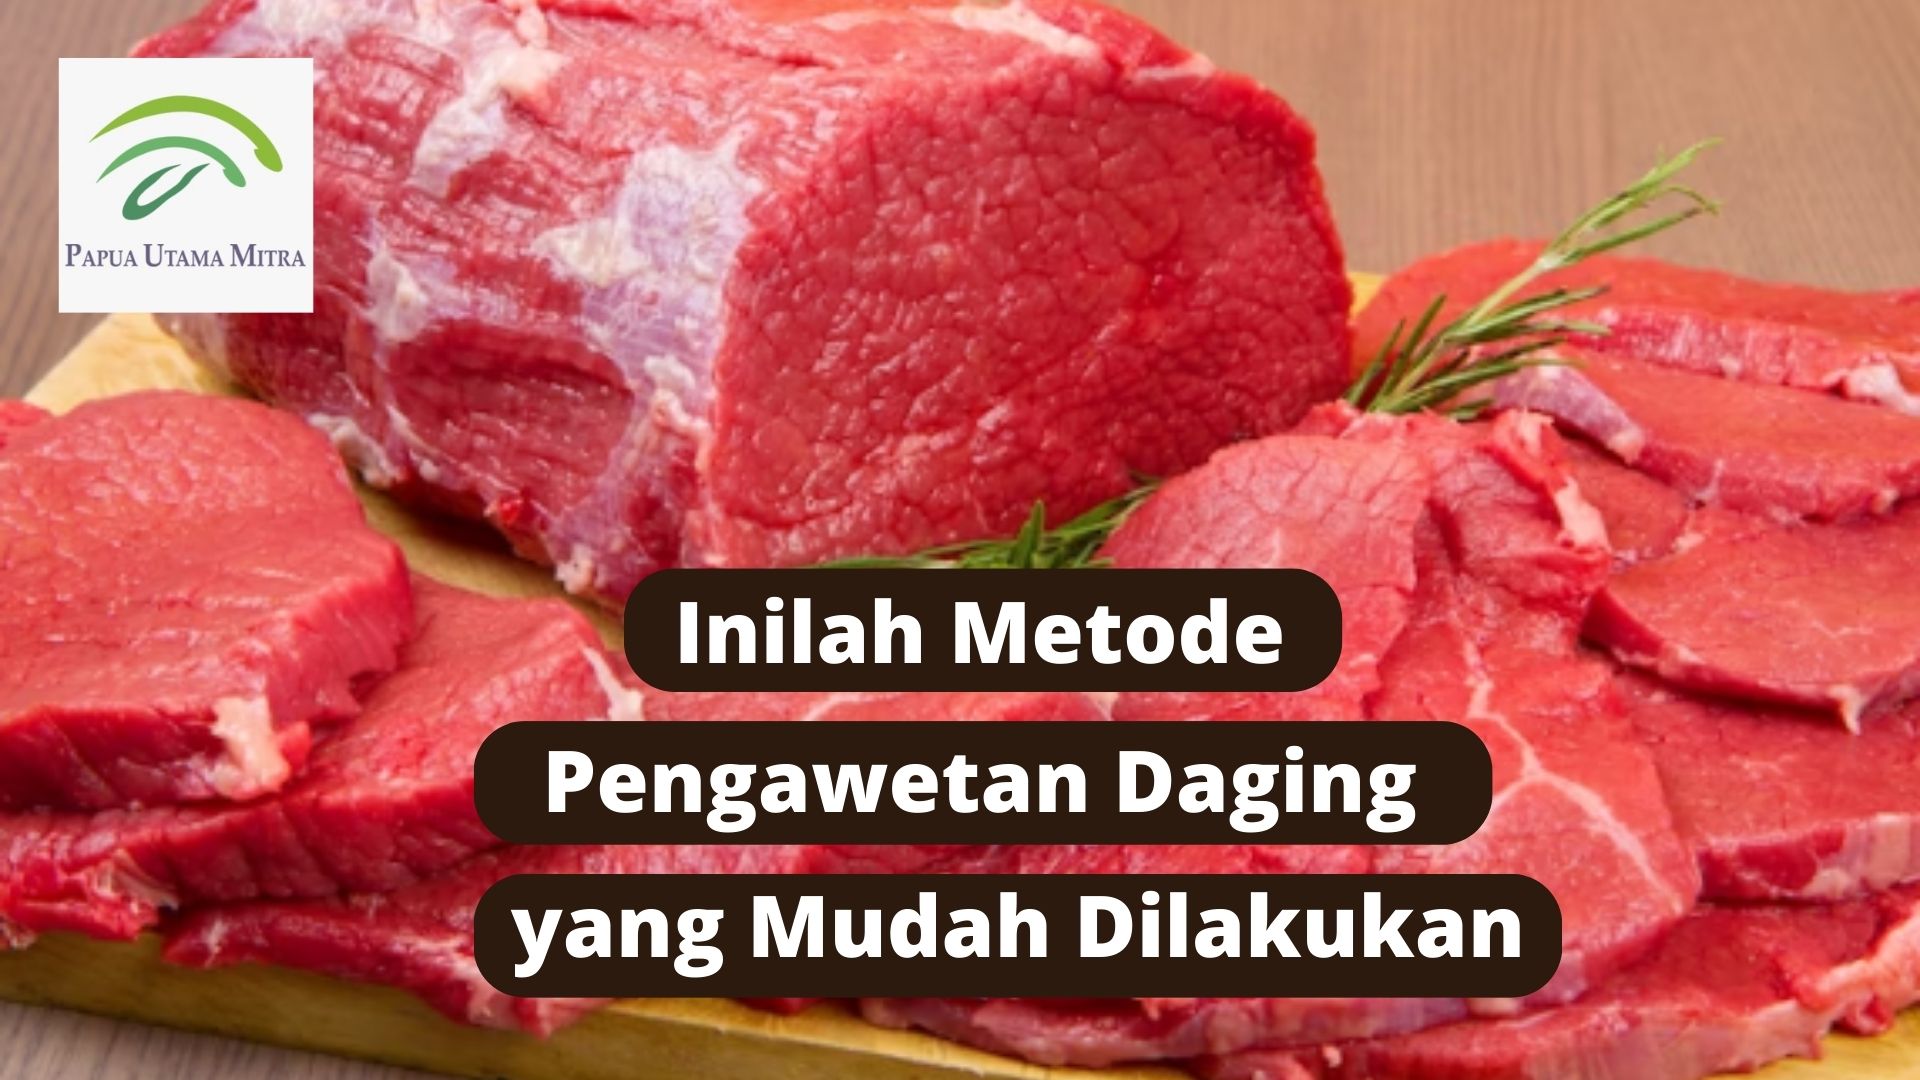 Inilah Metode Pengawetan daging yang Mudah Dilakukan